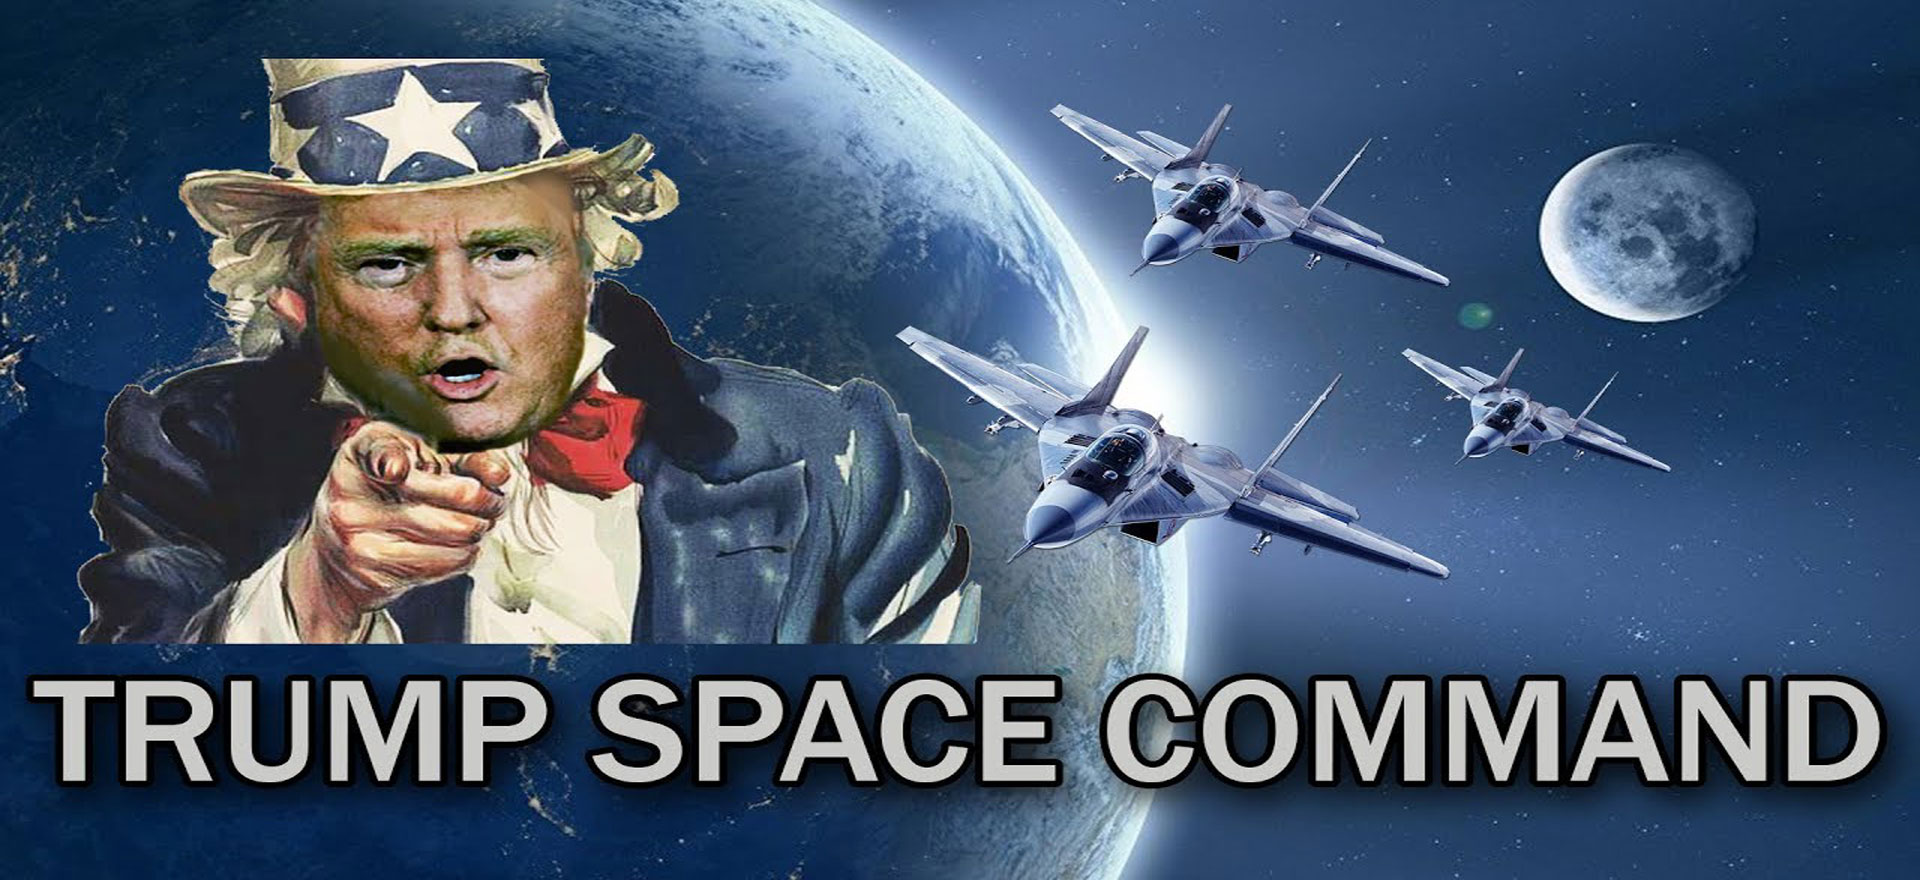 La verdad detrás de la fuerza espacial de Donald Trump